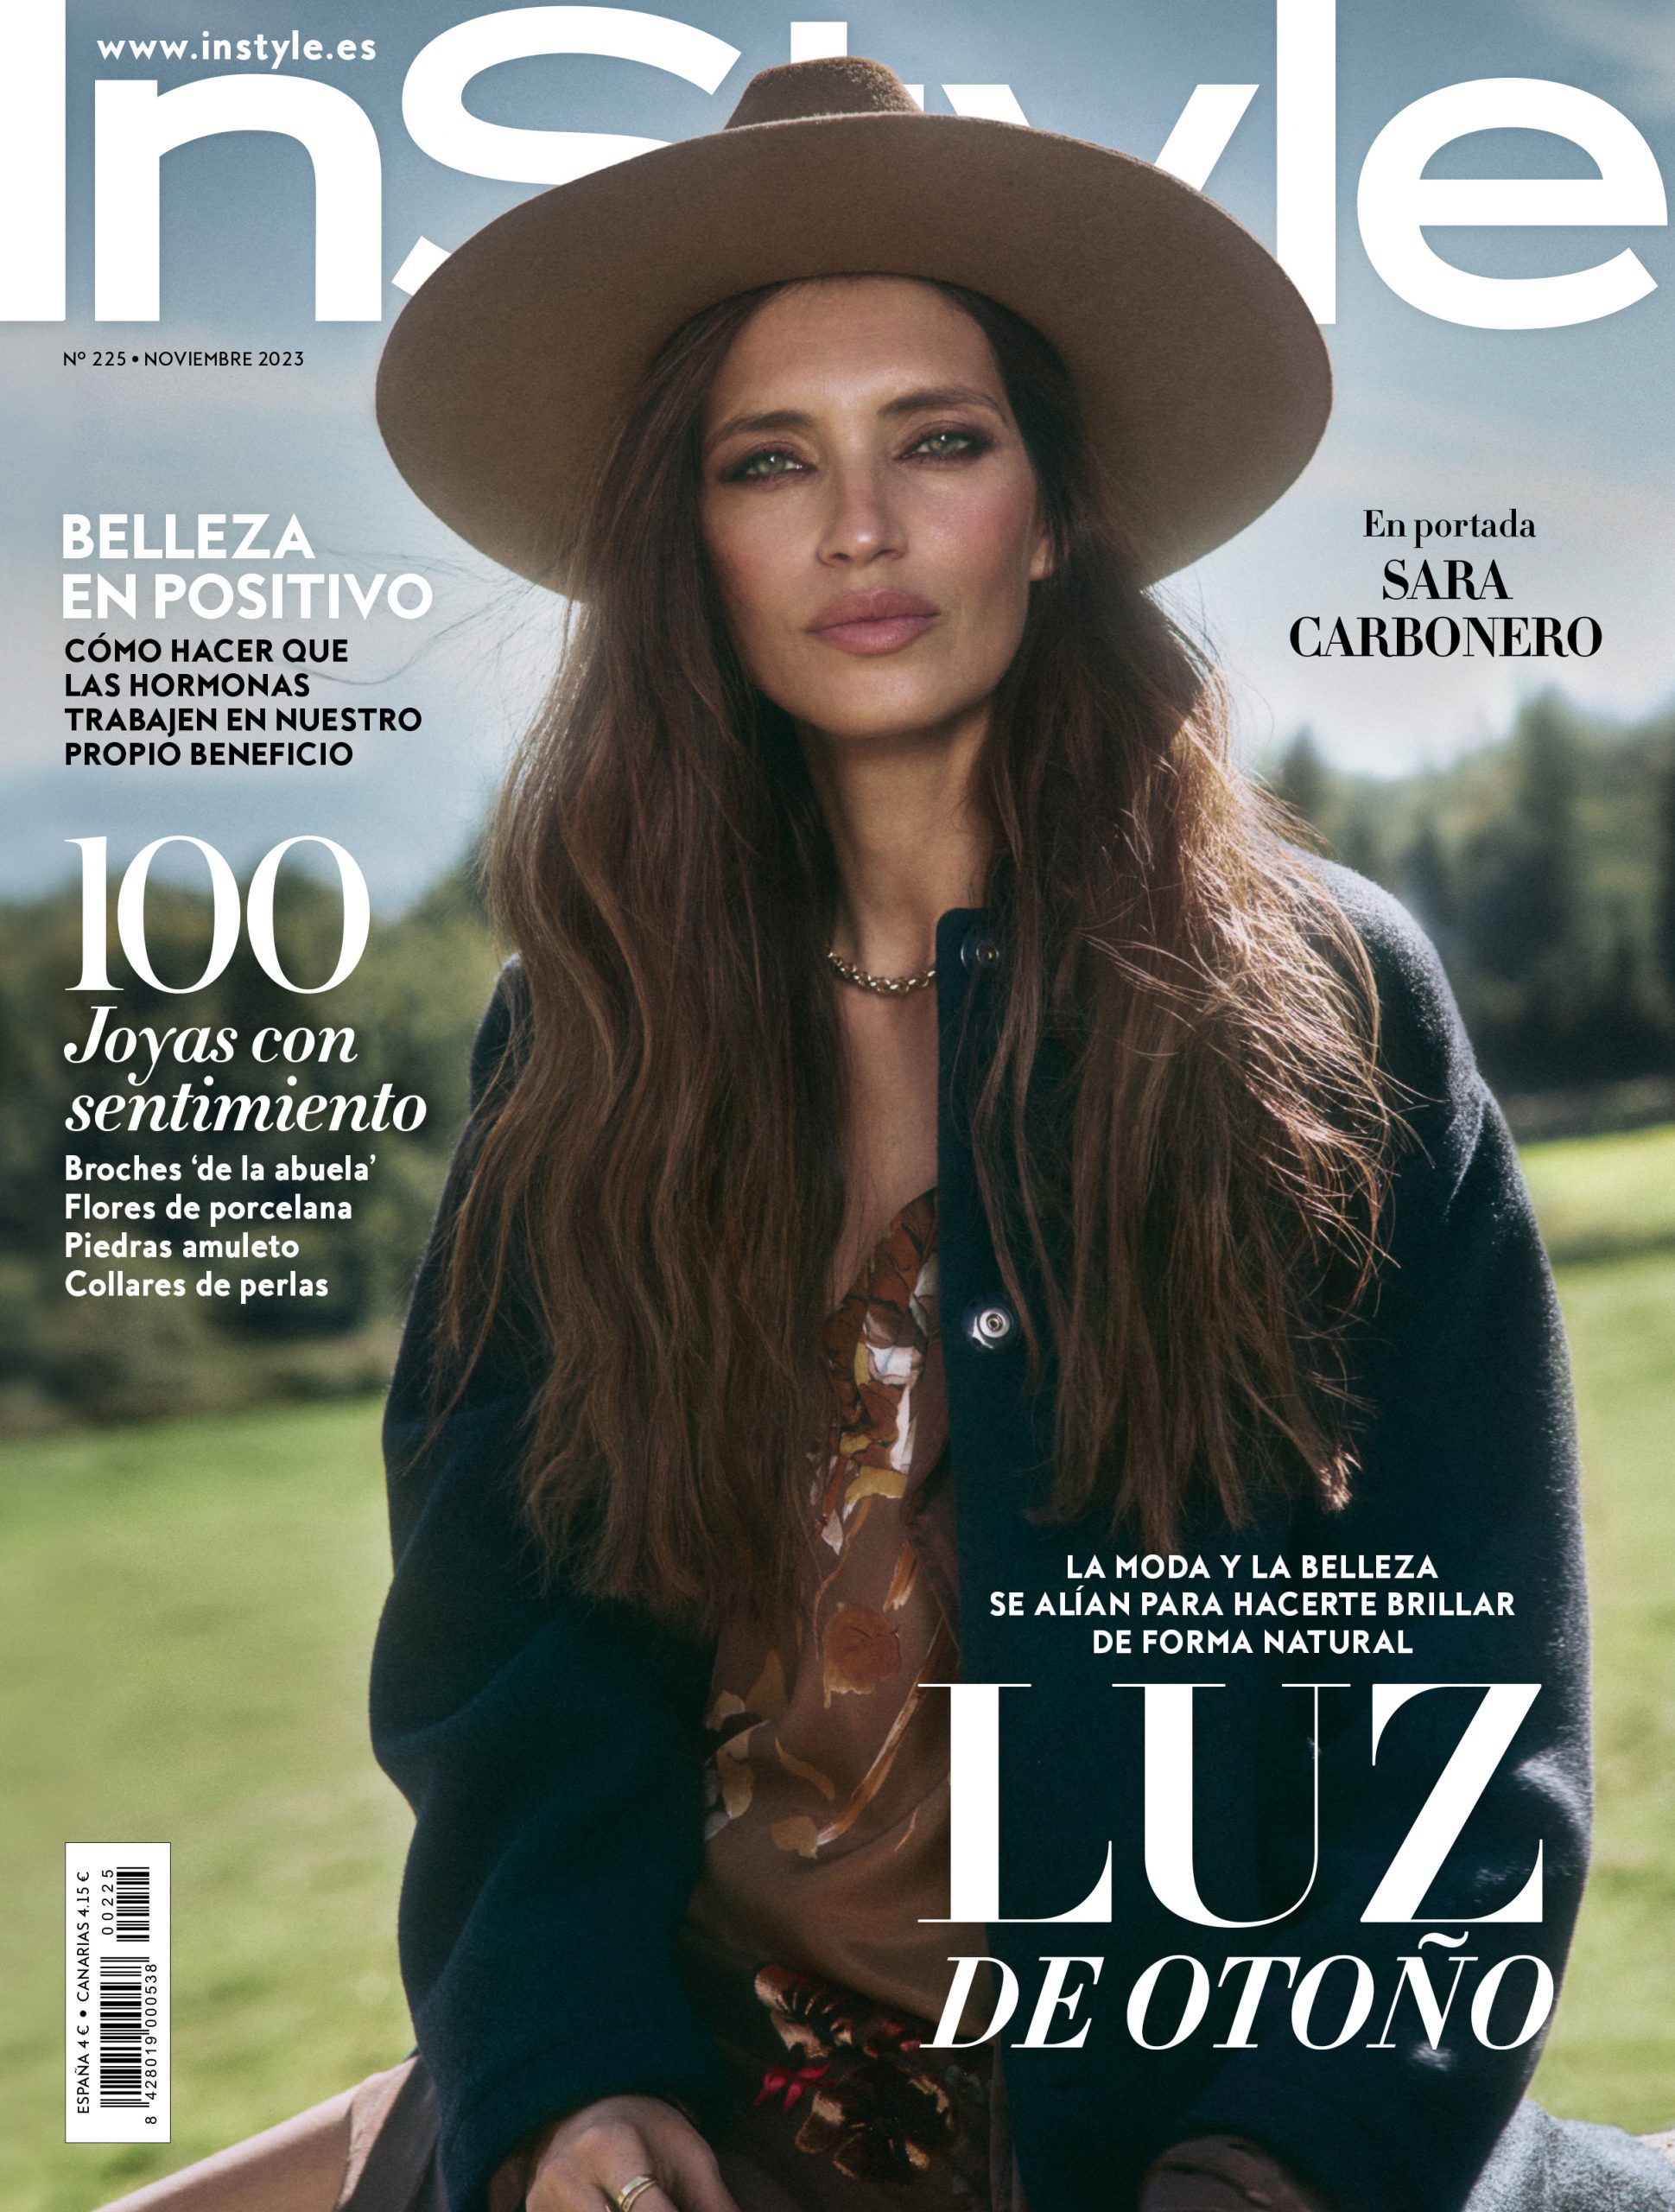 Cover for InStyle Spain with Sara Carbonero by Xavi Gordo | Raquel Sueiro